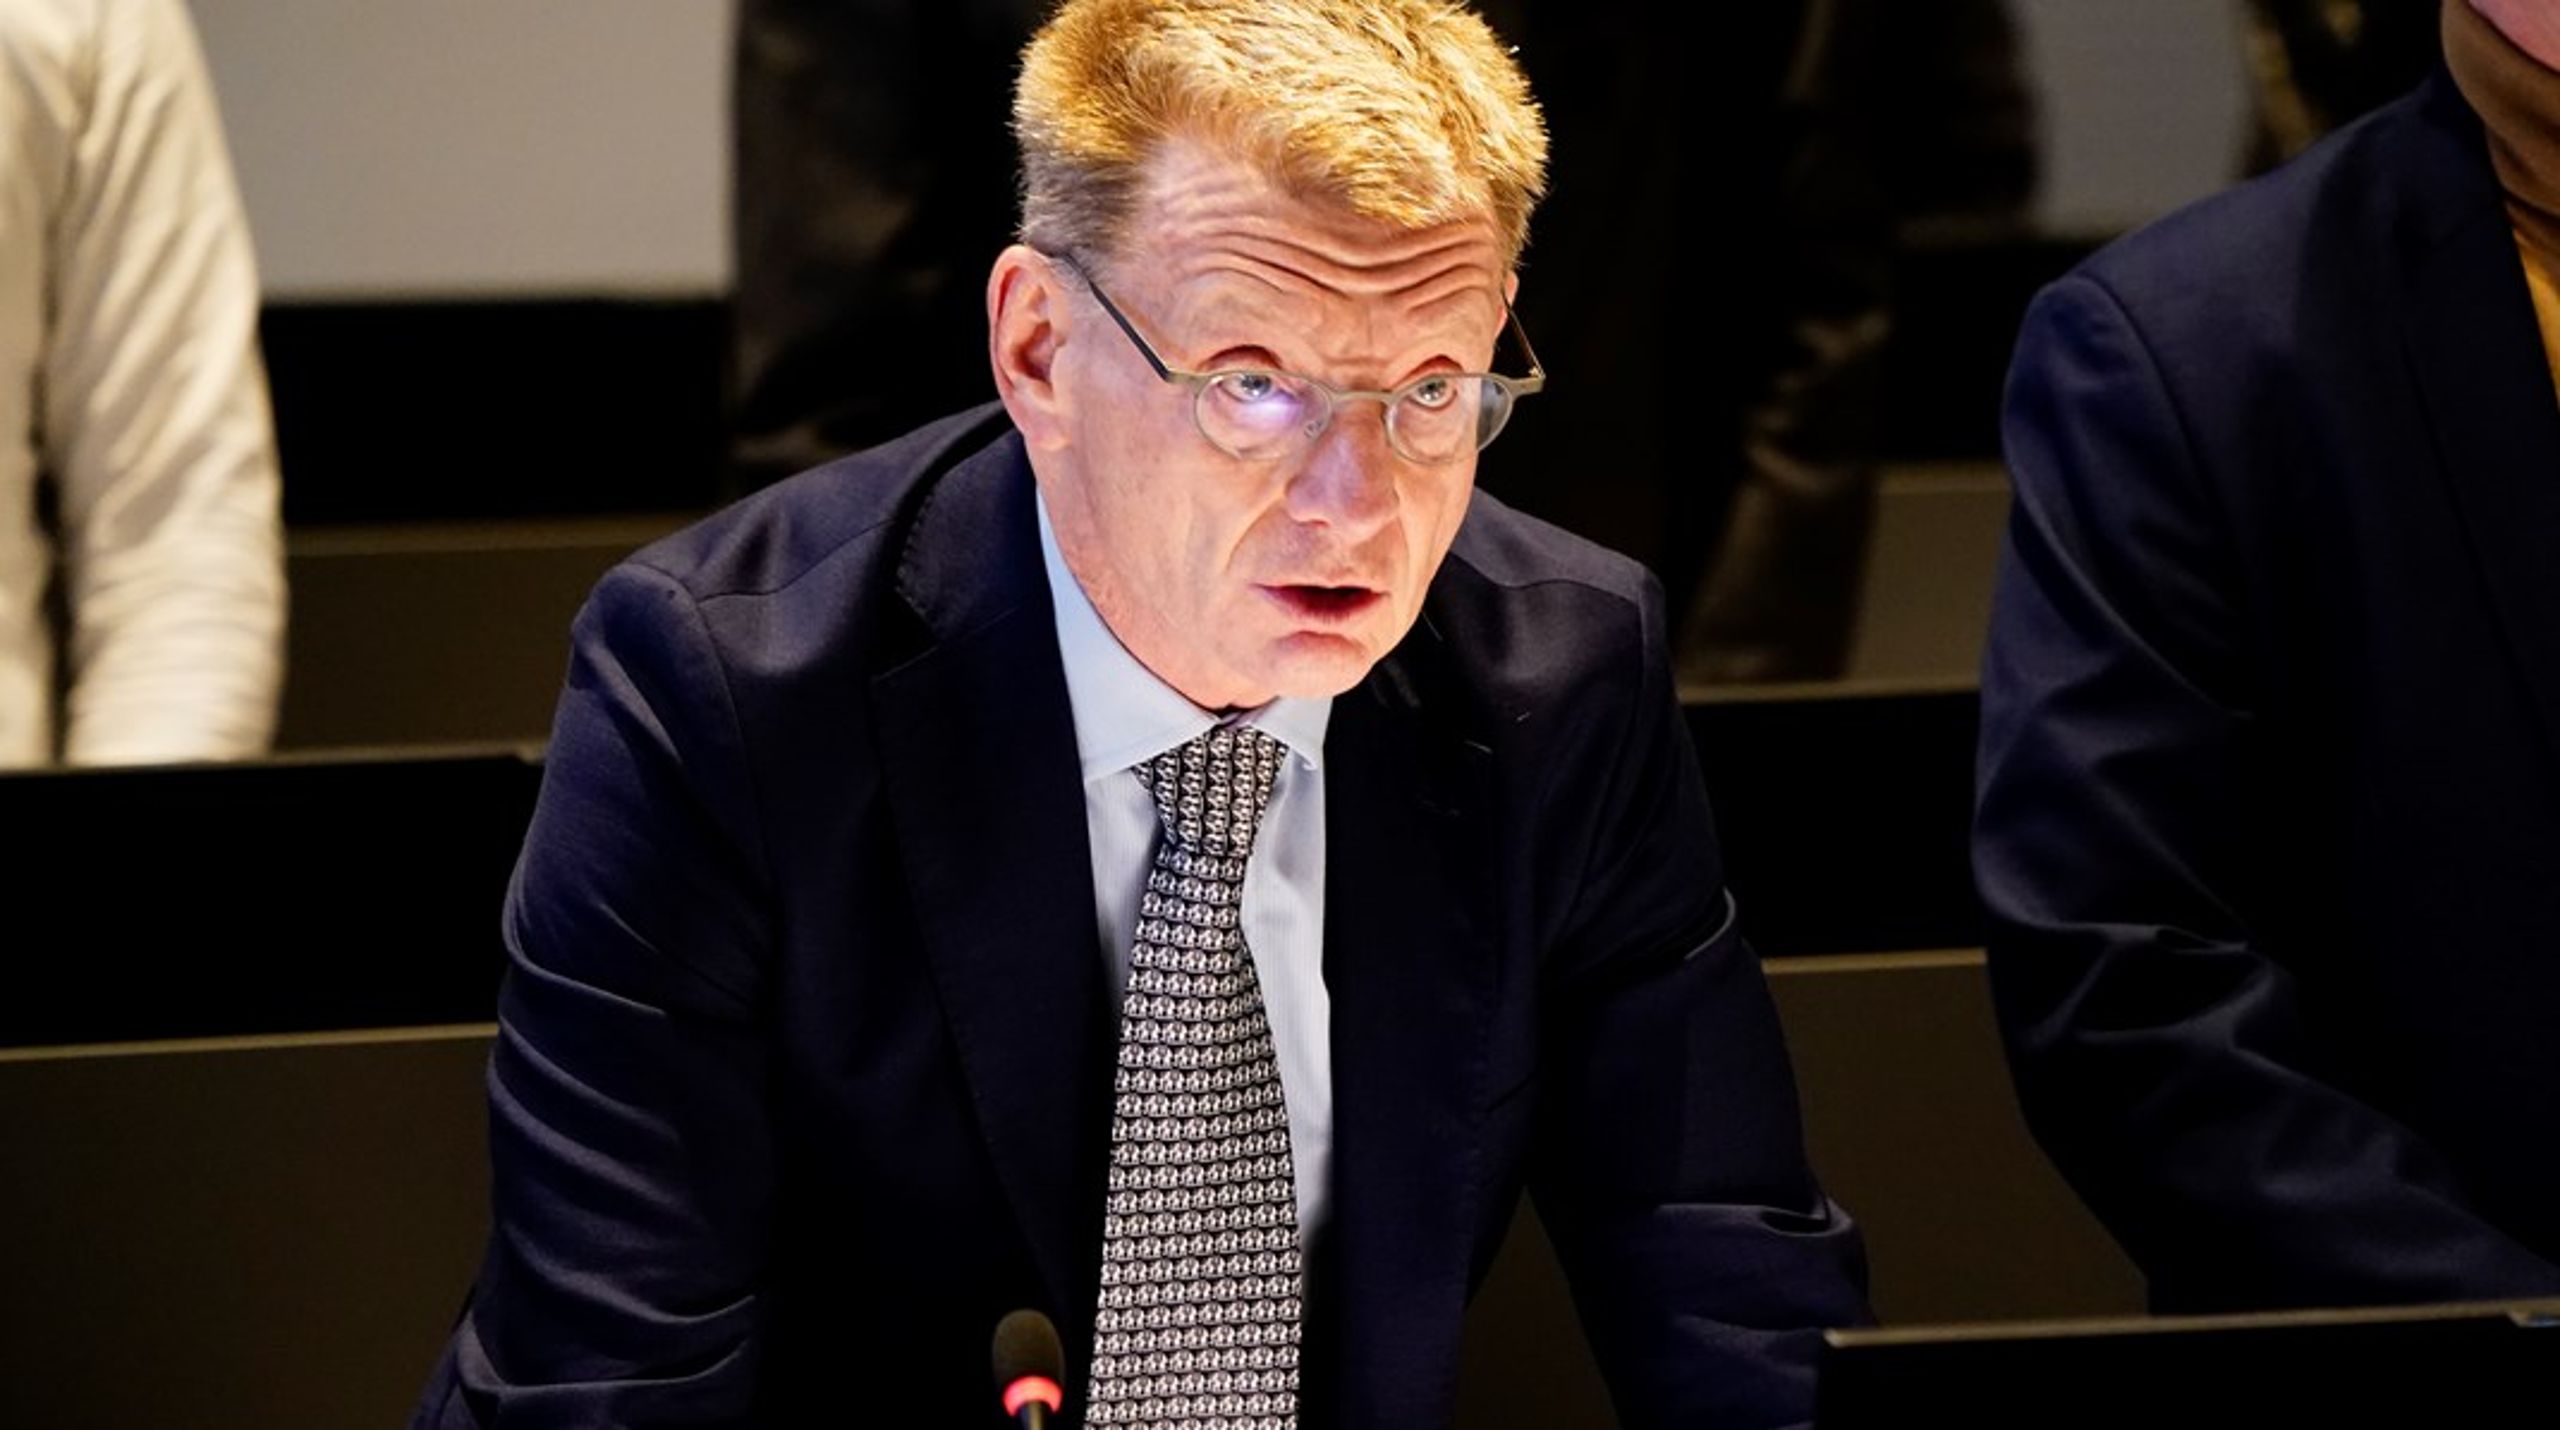 Rigsrettens formand, Thomas Rørdam, afsiger dom i sagen mod den tidligere udlændige og integrationsminister, Inger Støjberg, der idømmes 60 dages ubetinget fængsel.